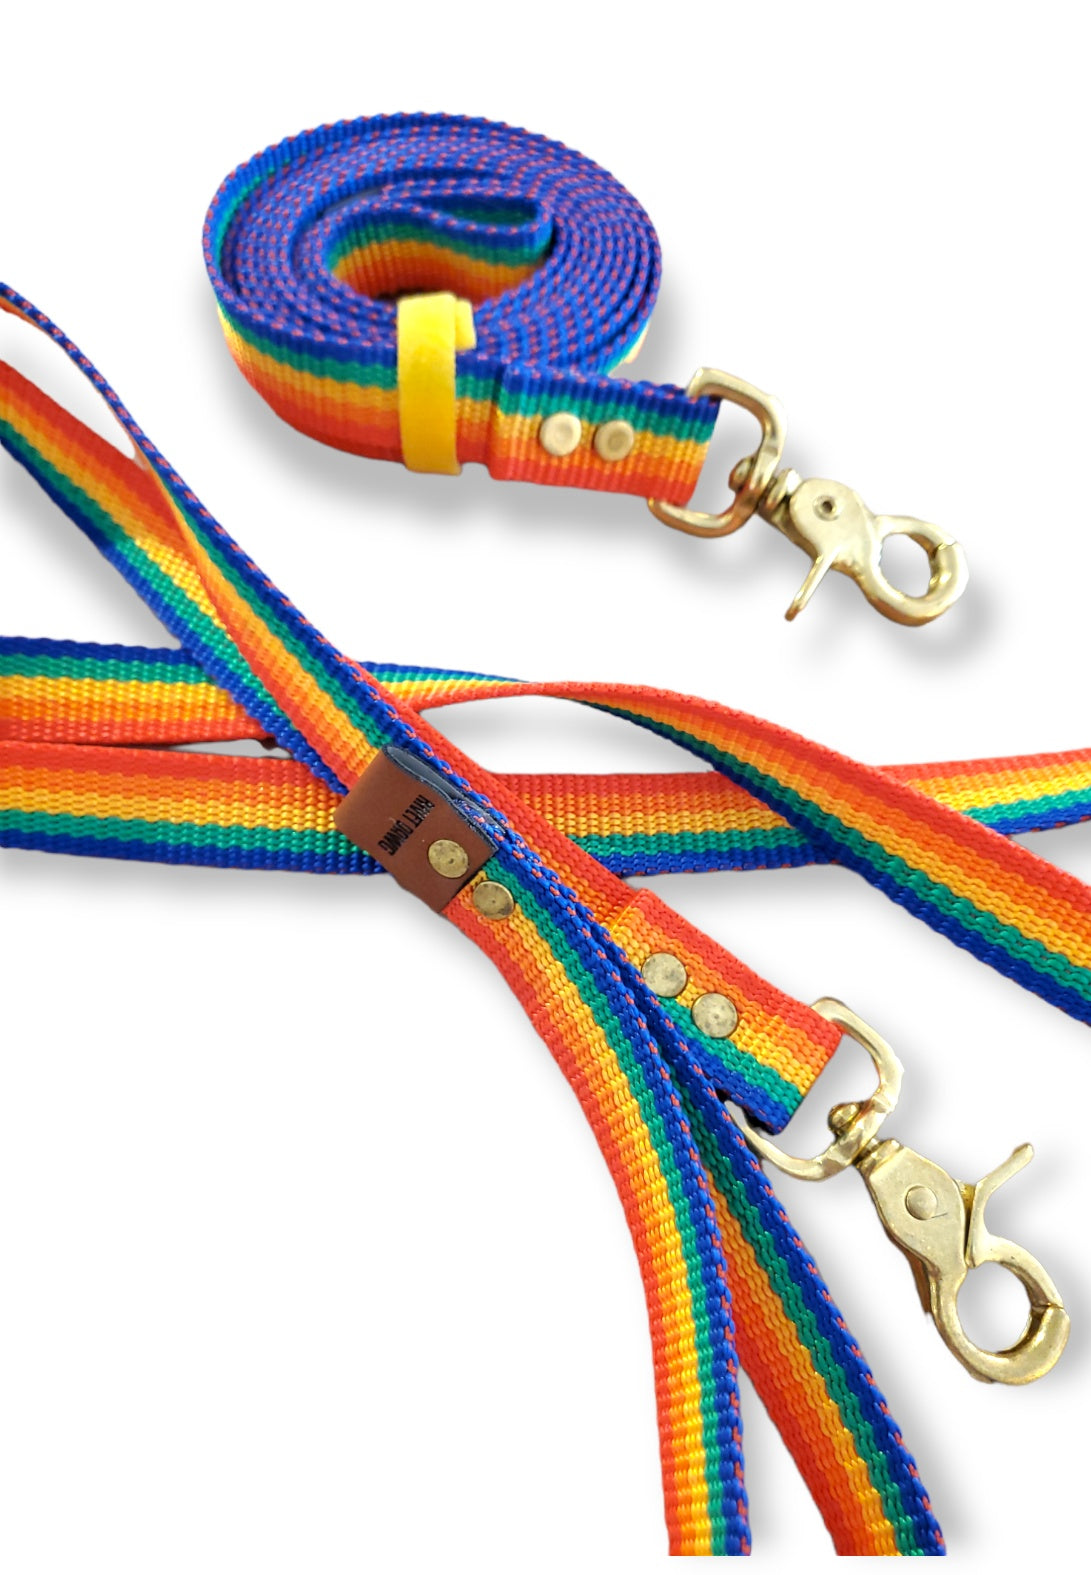 Rainbow Dog Leash by Rivet Dawg